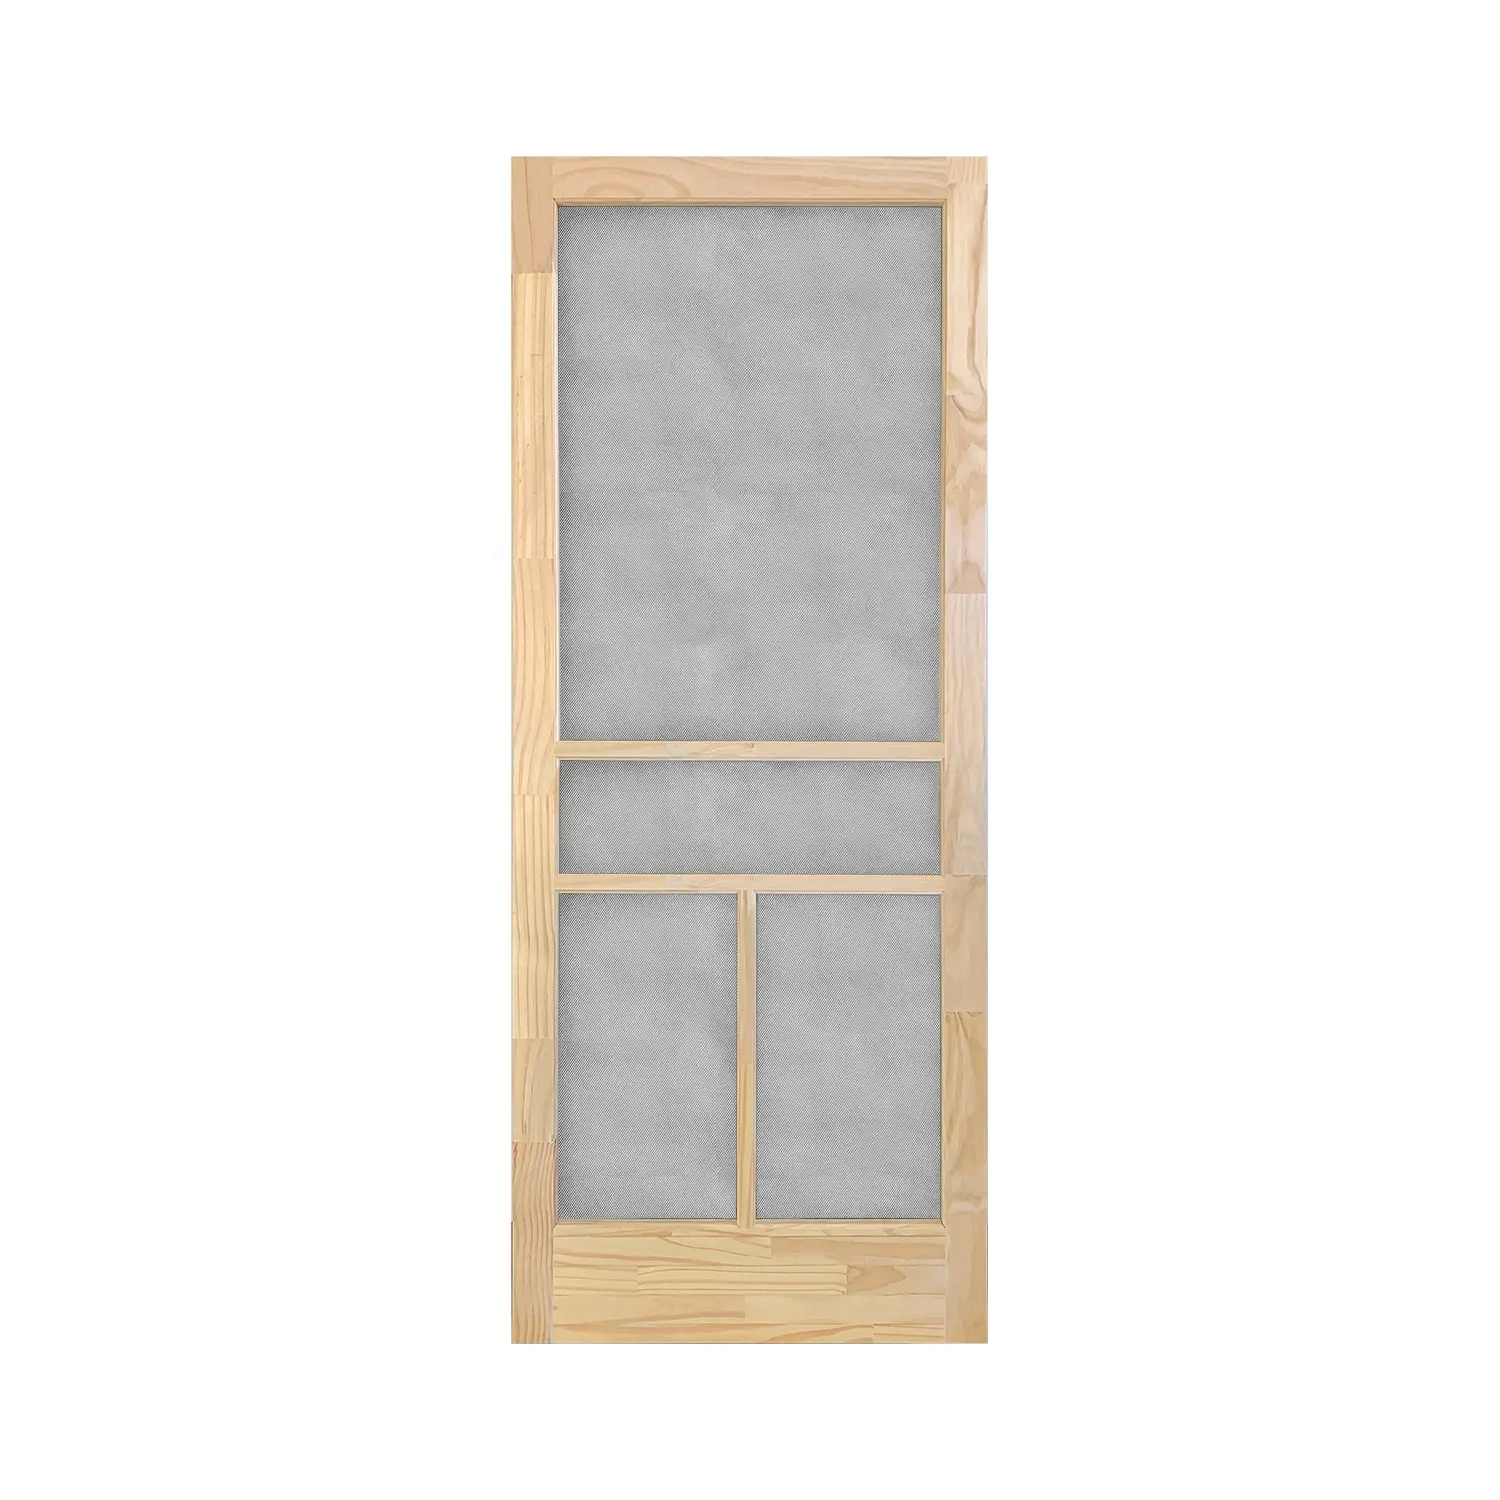 Tela de madeira sólida para porta, venda direta da fábrica, tela de madeira para inserir porta, mosquito